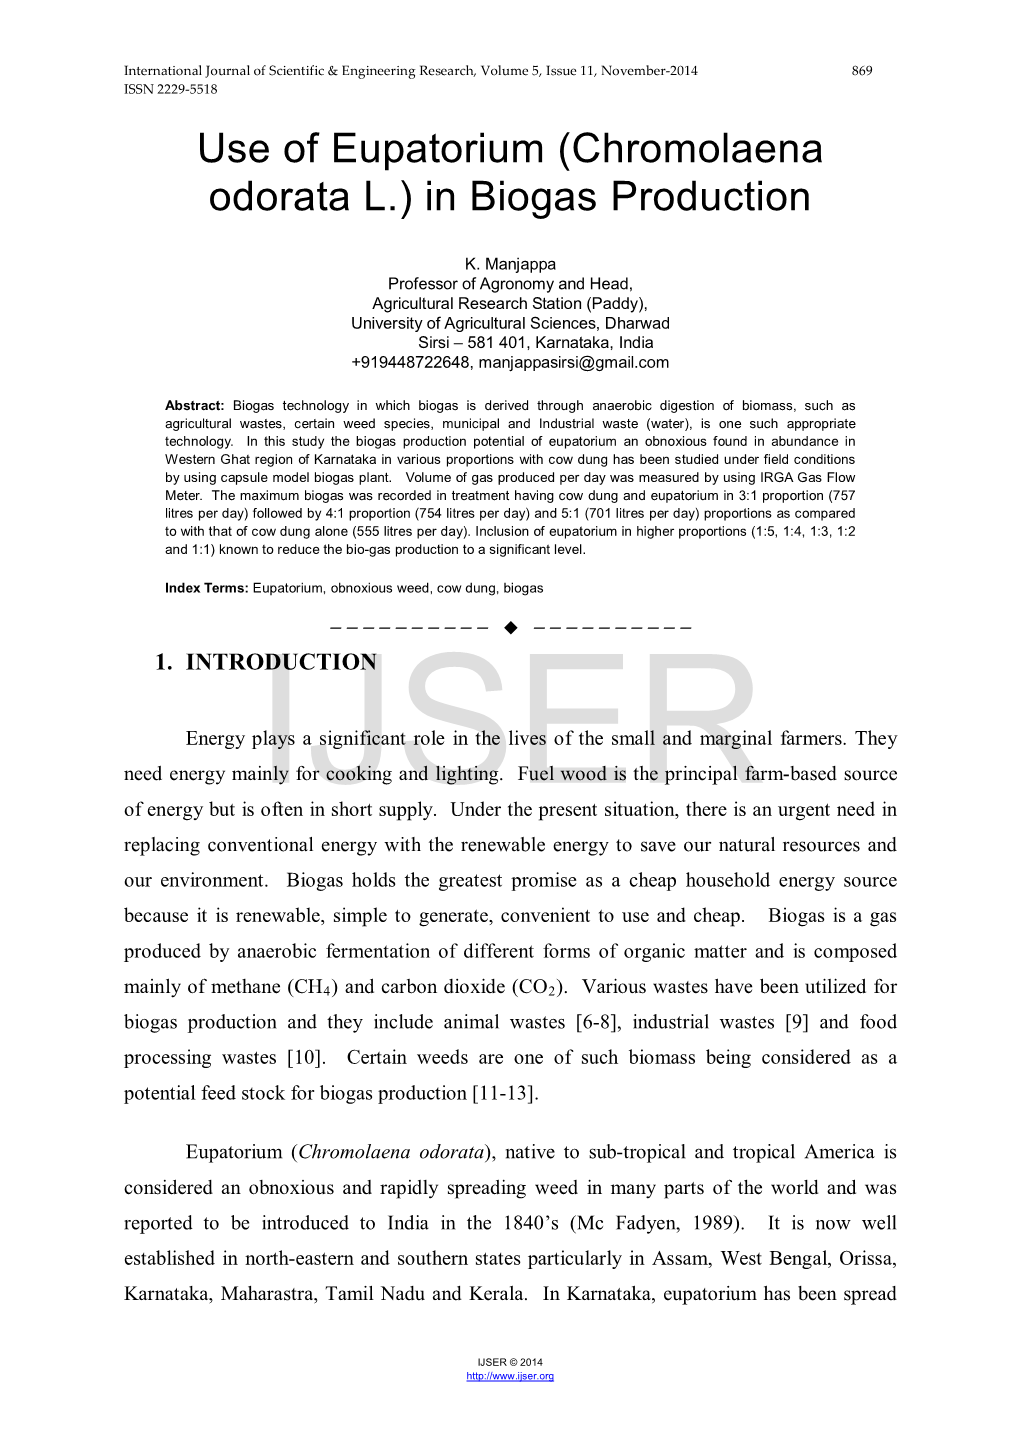 Use of Eupatorium (Chromolaena Odorata L.) in Biogas Production